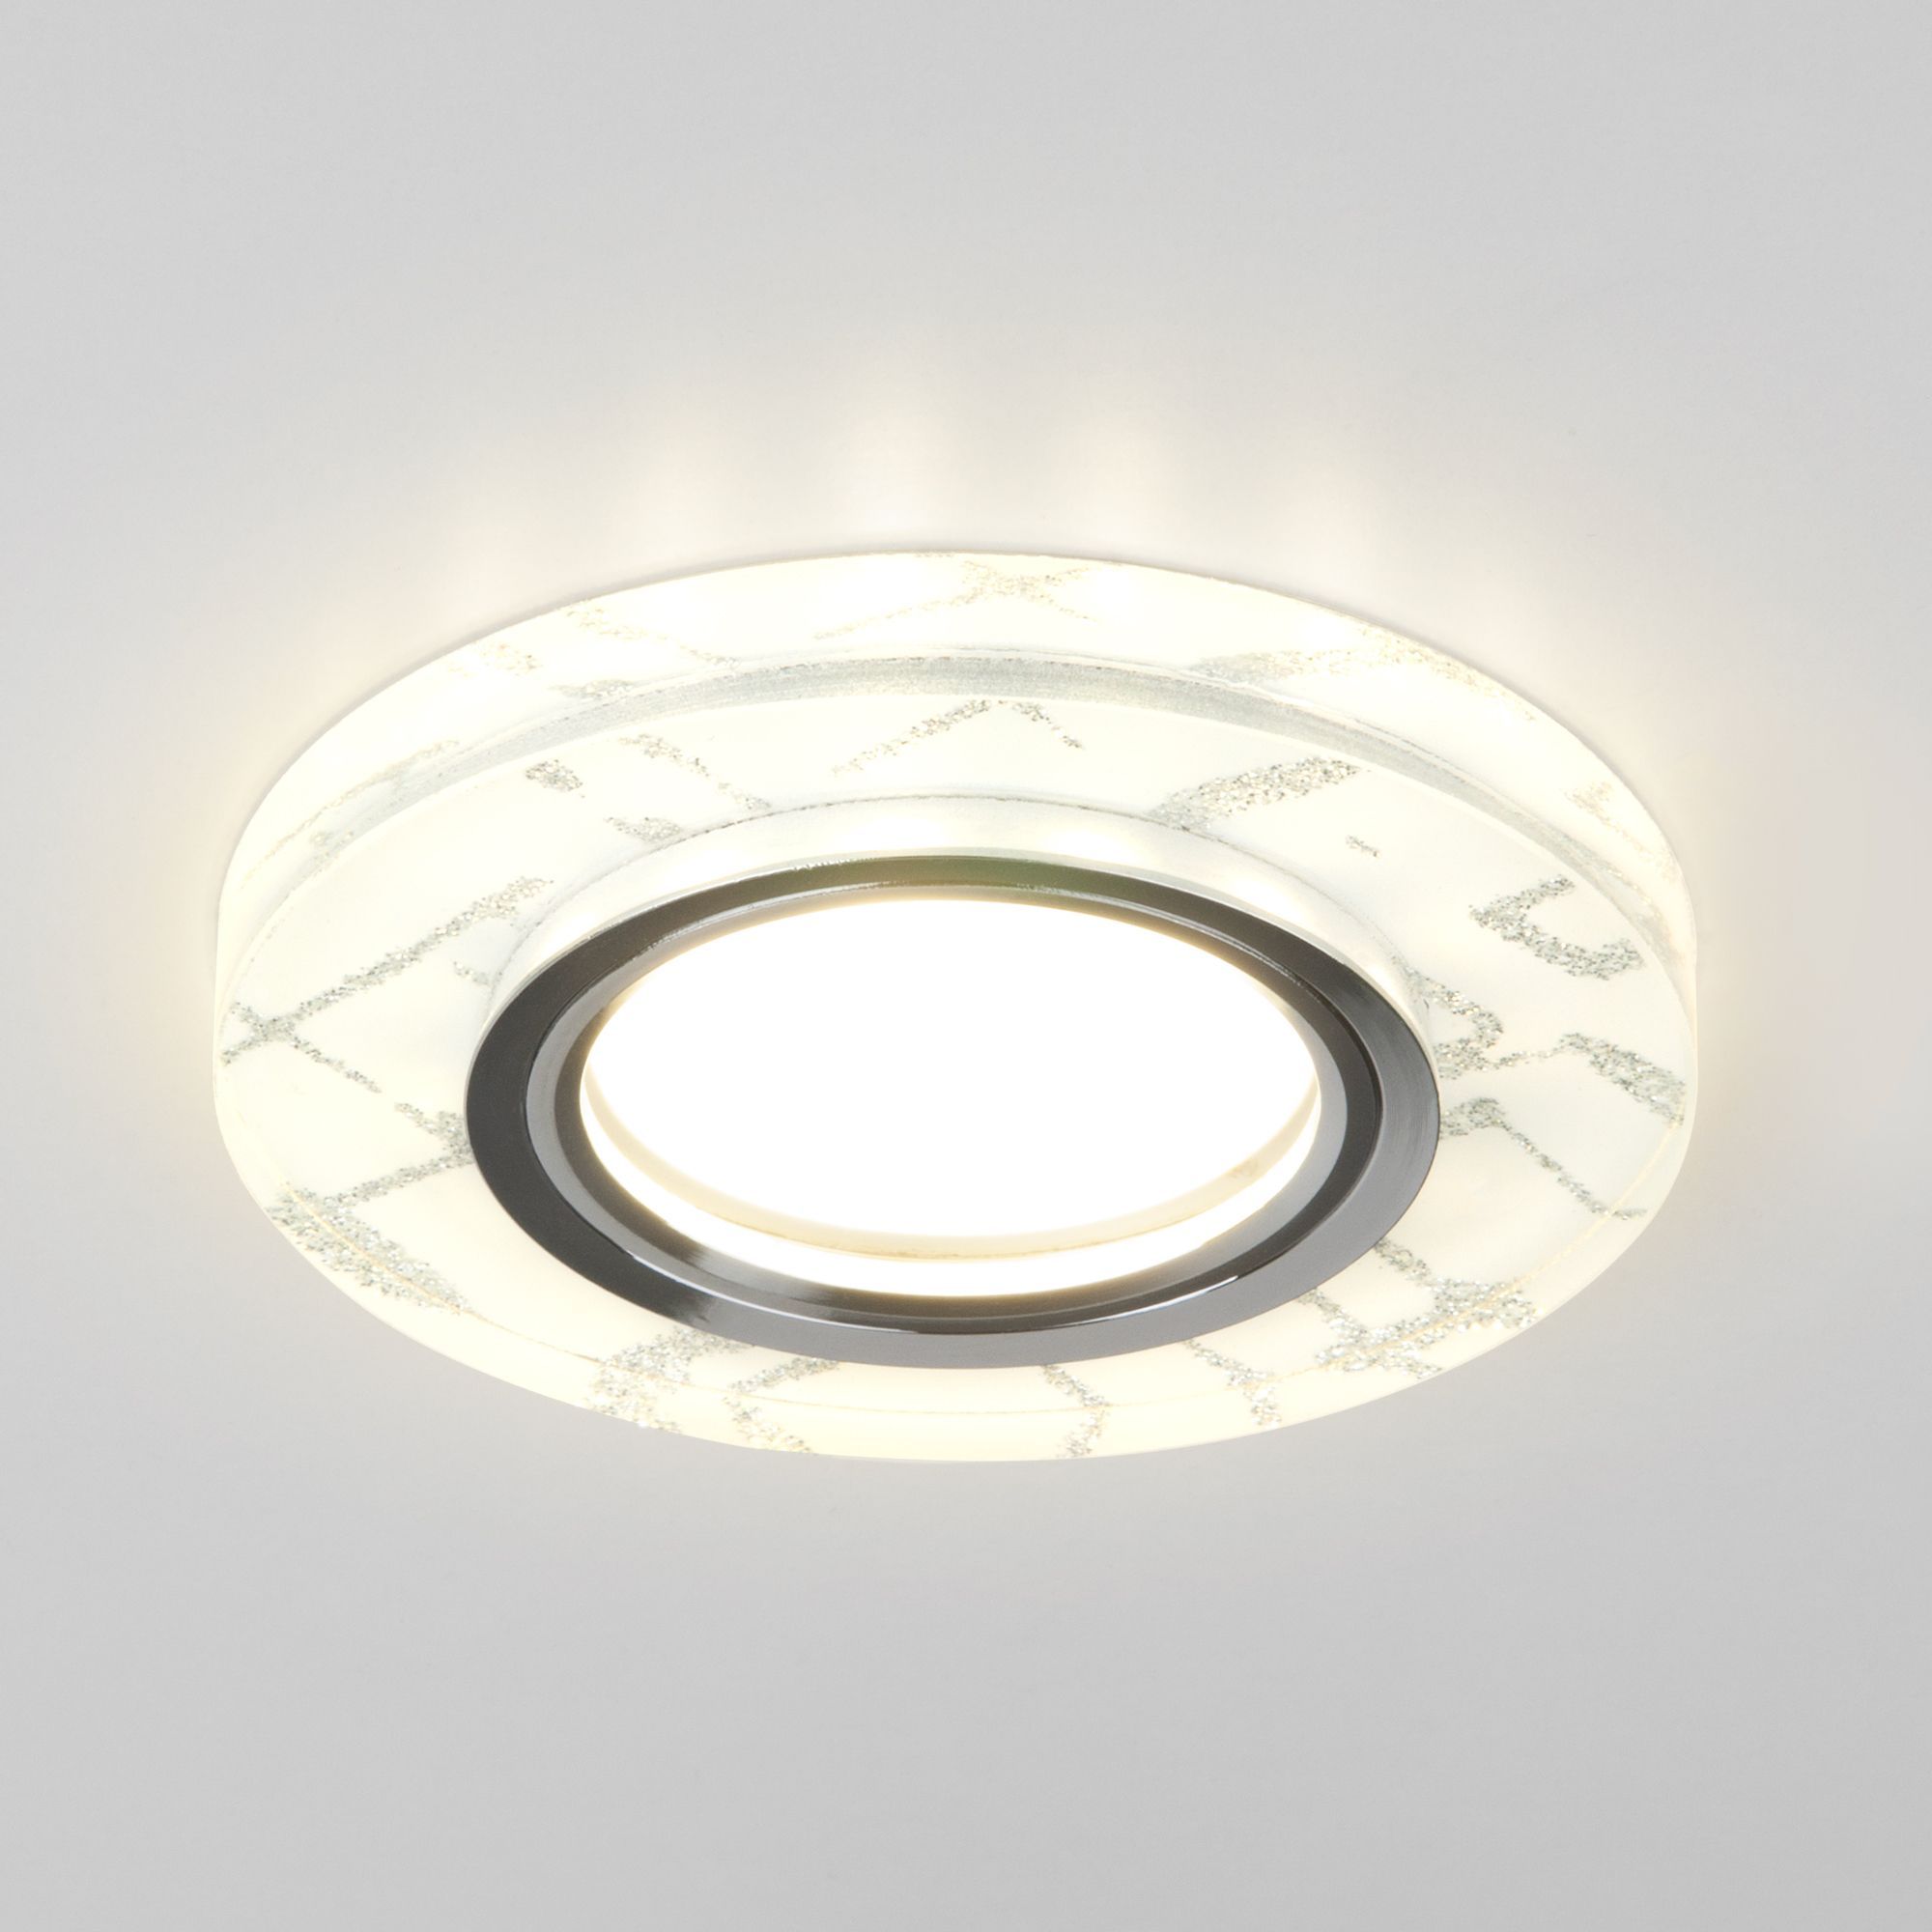 Точечный светильник с LED подсветкой 8371 MR16 WH/SL белый/серебро